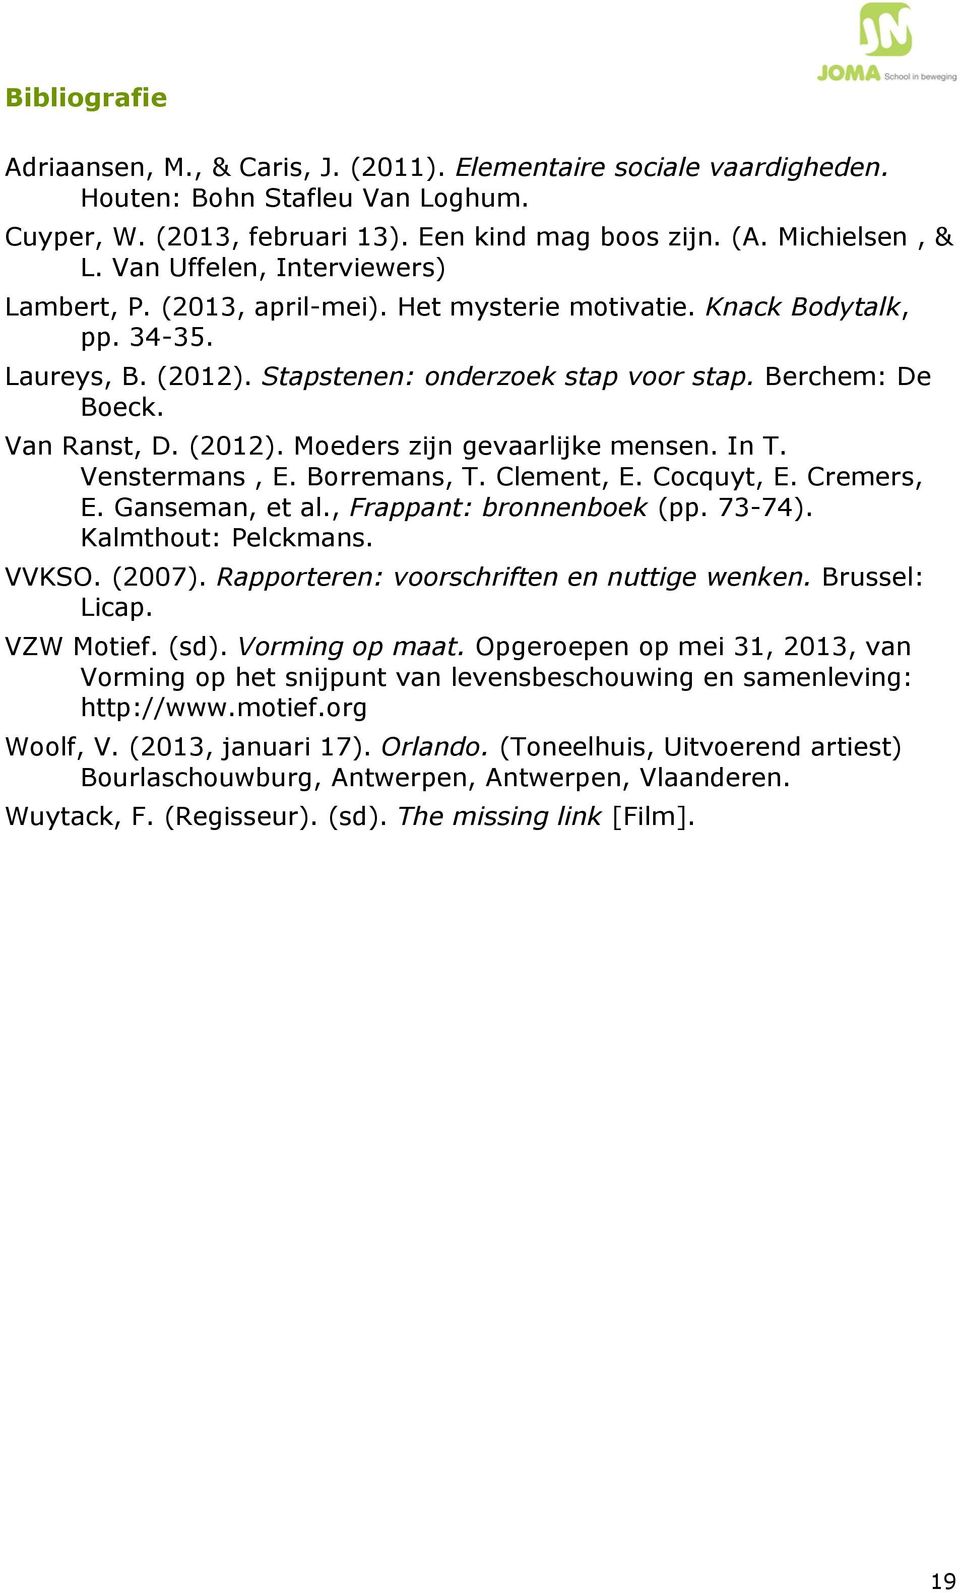 (2012). Moeders zijn gevaarlijke mensen. In T. Venstermans, E. Borremans, T. Clement, E. Cocquyt, E. Cremers, E. Ganseman, et al., Frappant: bronnenboek (pp. 73-74). Kalmthout: Pelckmans. VVKSO.